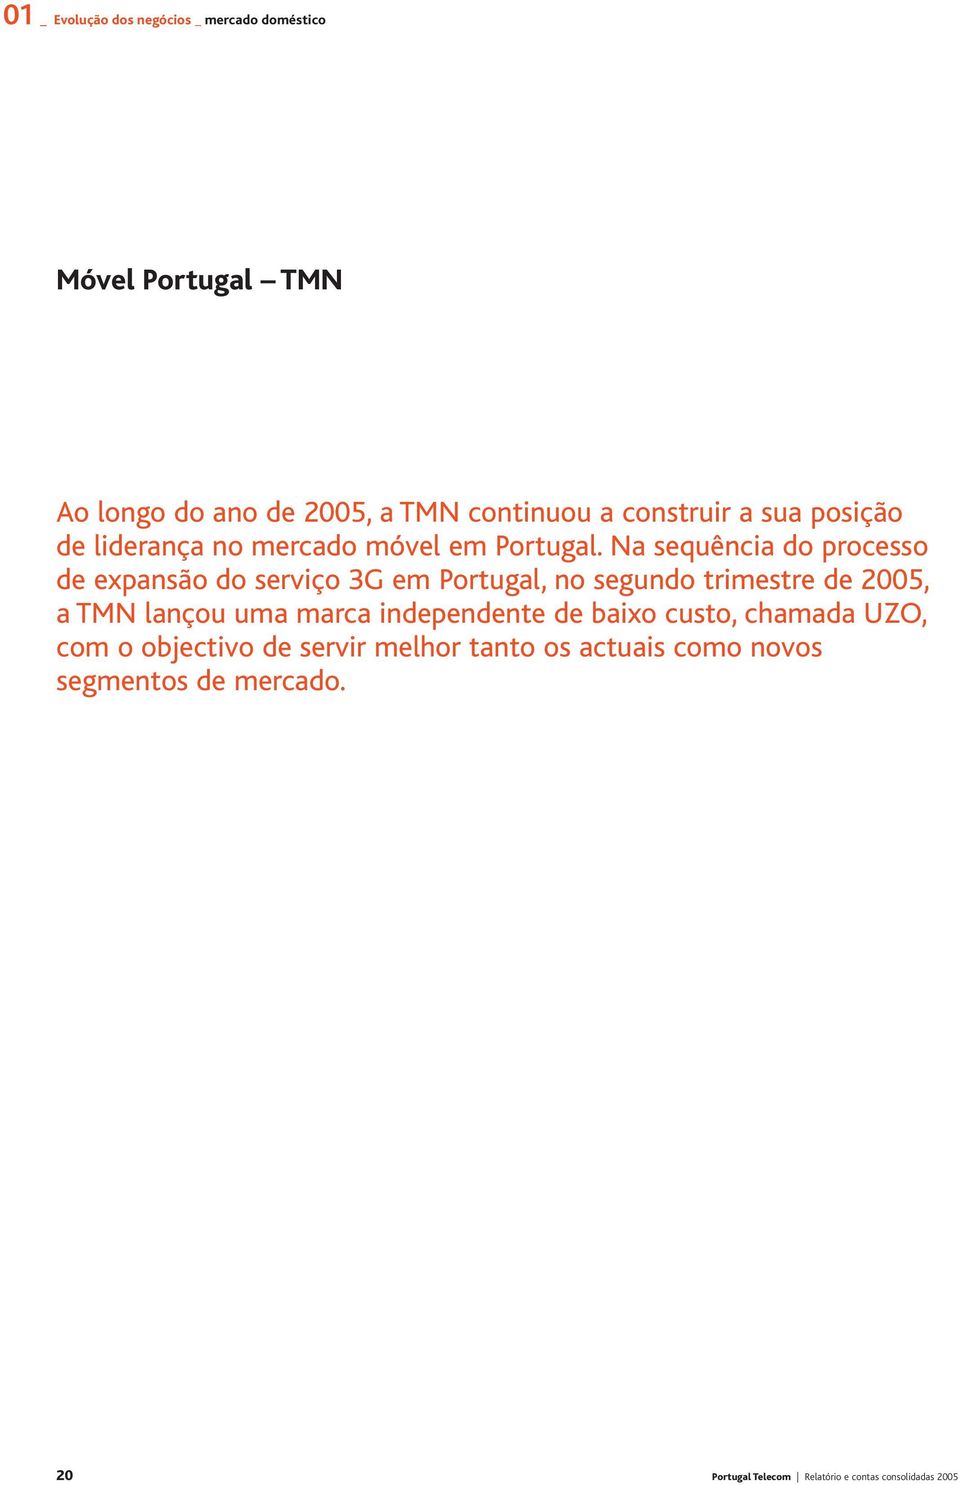 Na sequência do processo de expansão do serviço 3G em Portugal, no segundo trimestre de 2005, a TMN lançou uma marca